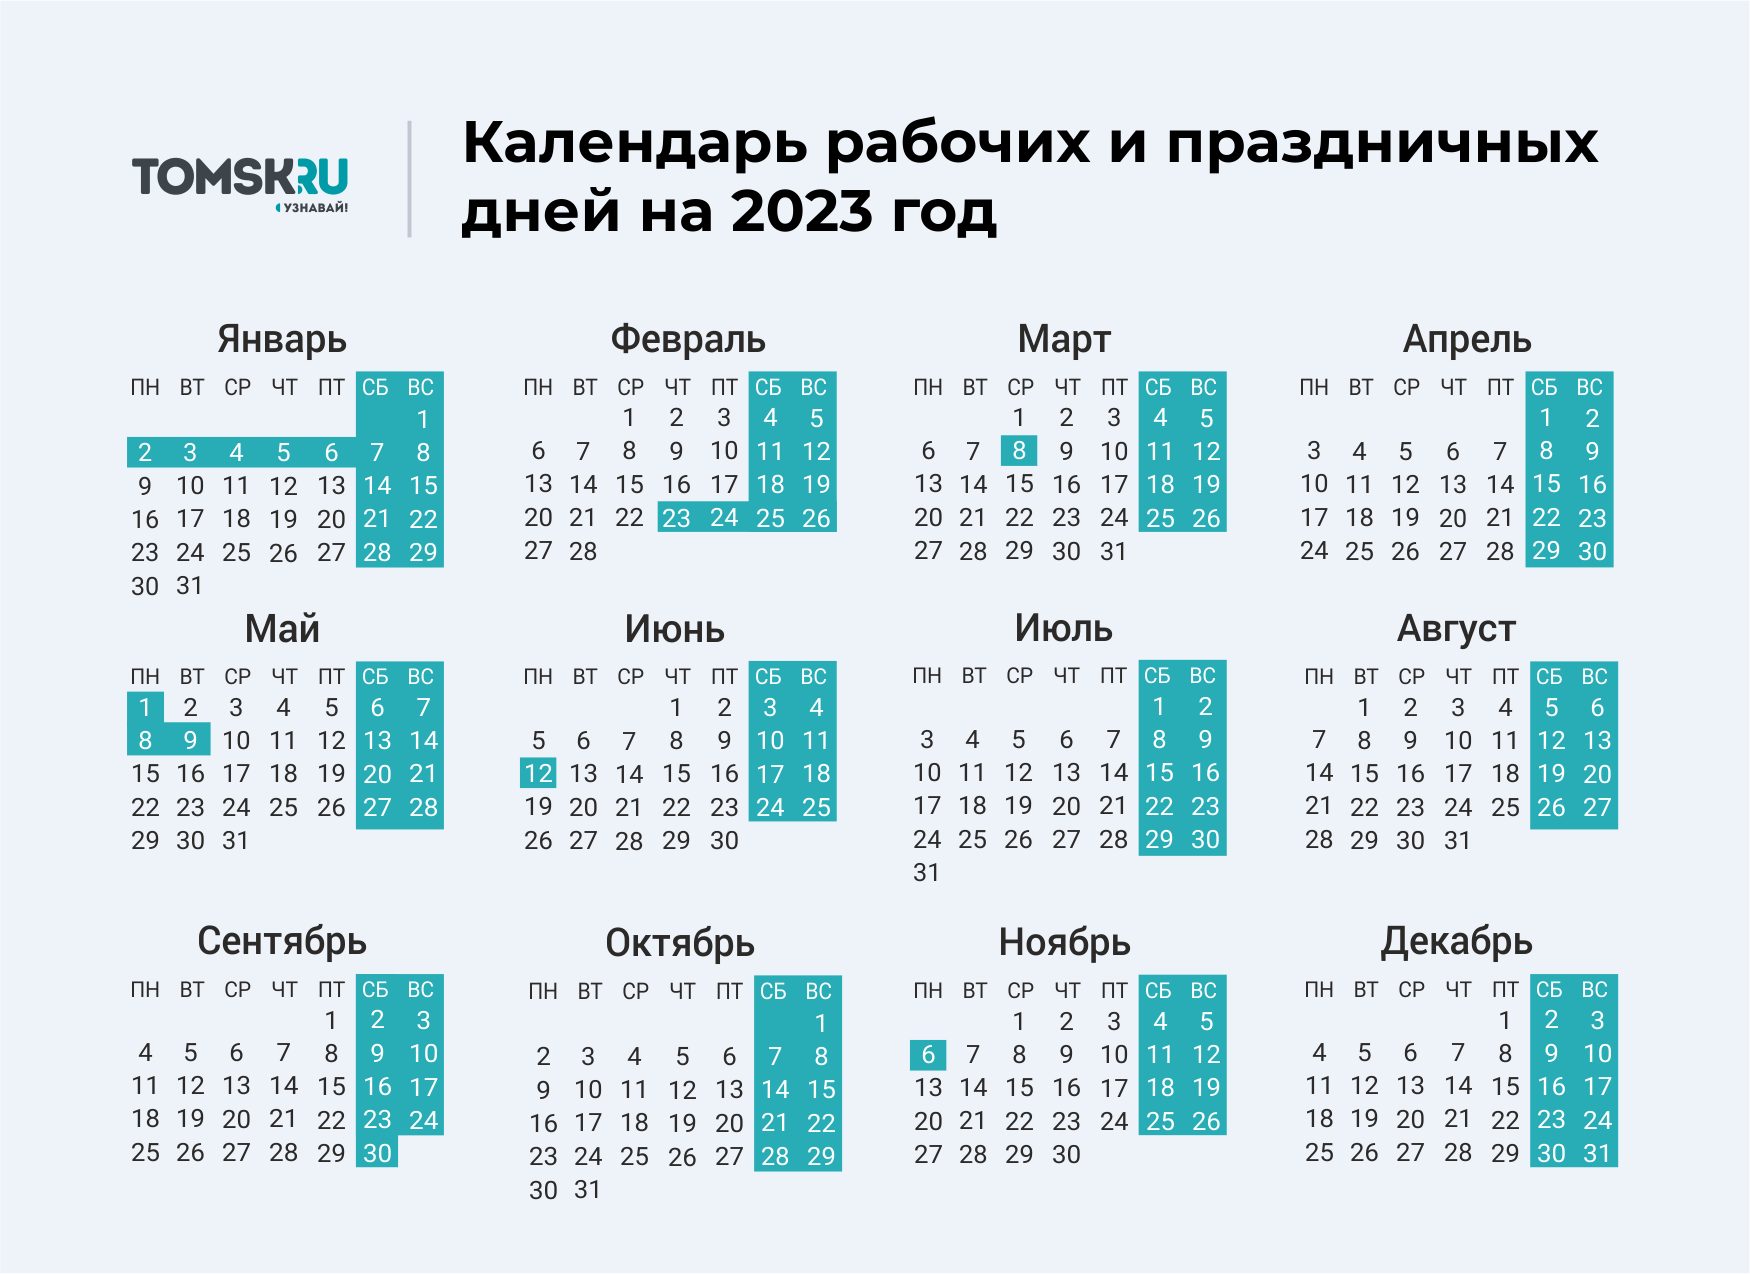 Сколько осталось учиться с праздниками и выходными. Выходные дни в 2023 году в России календарь. Календарь выходных и праздничных дней на 2023 год в России. Календарь праздничных выходеыхв 2023 году. Календарь на 2023 год с праздниками и выходными выходные снизу.